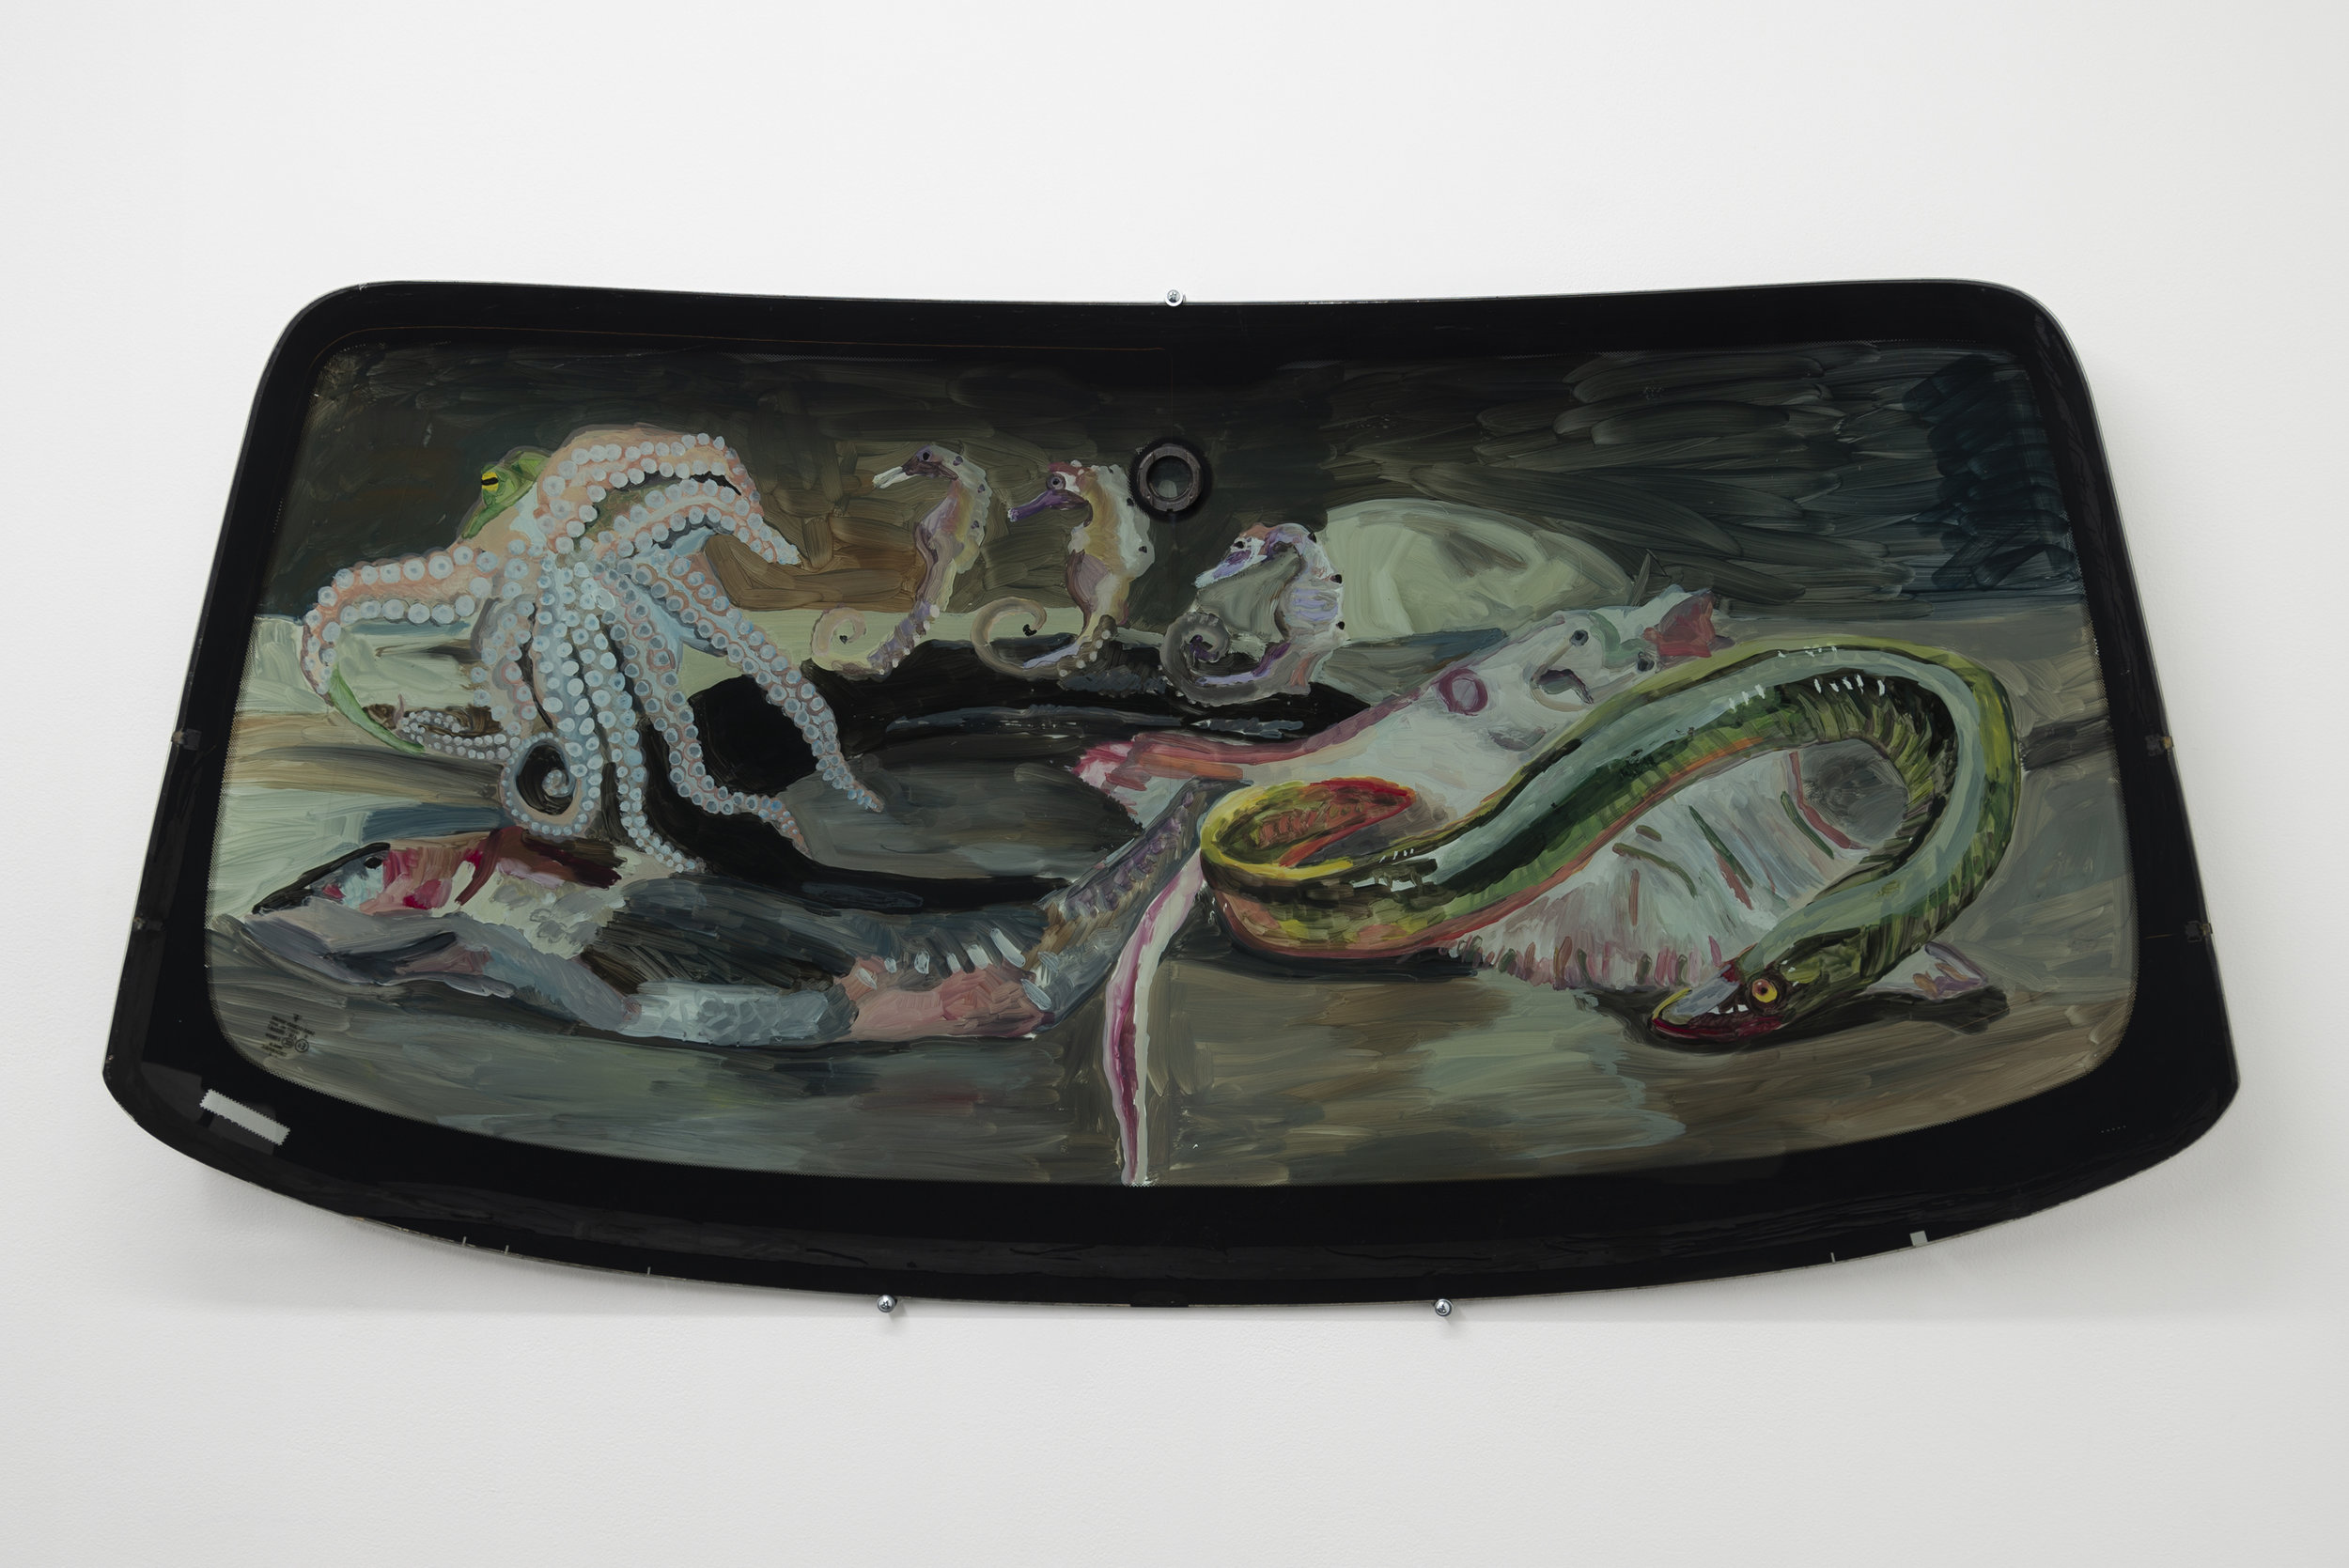  Jill Mulleady,  Still Life with Eel &amp; Octopus , 2018, Enamel on Porsche windshield, 29 x 58 in 